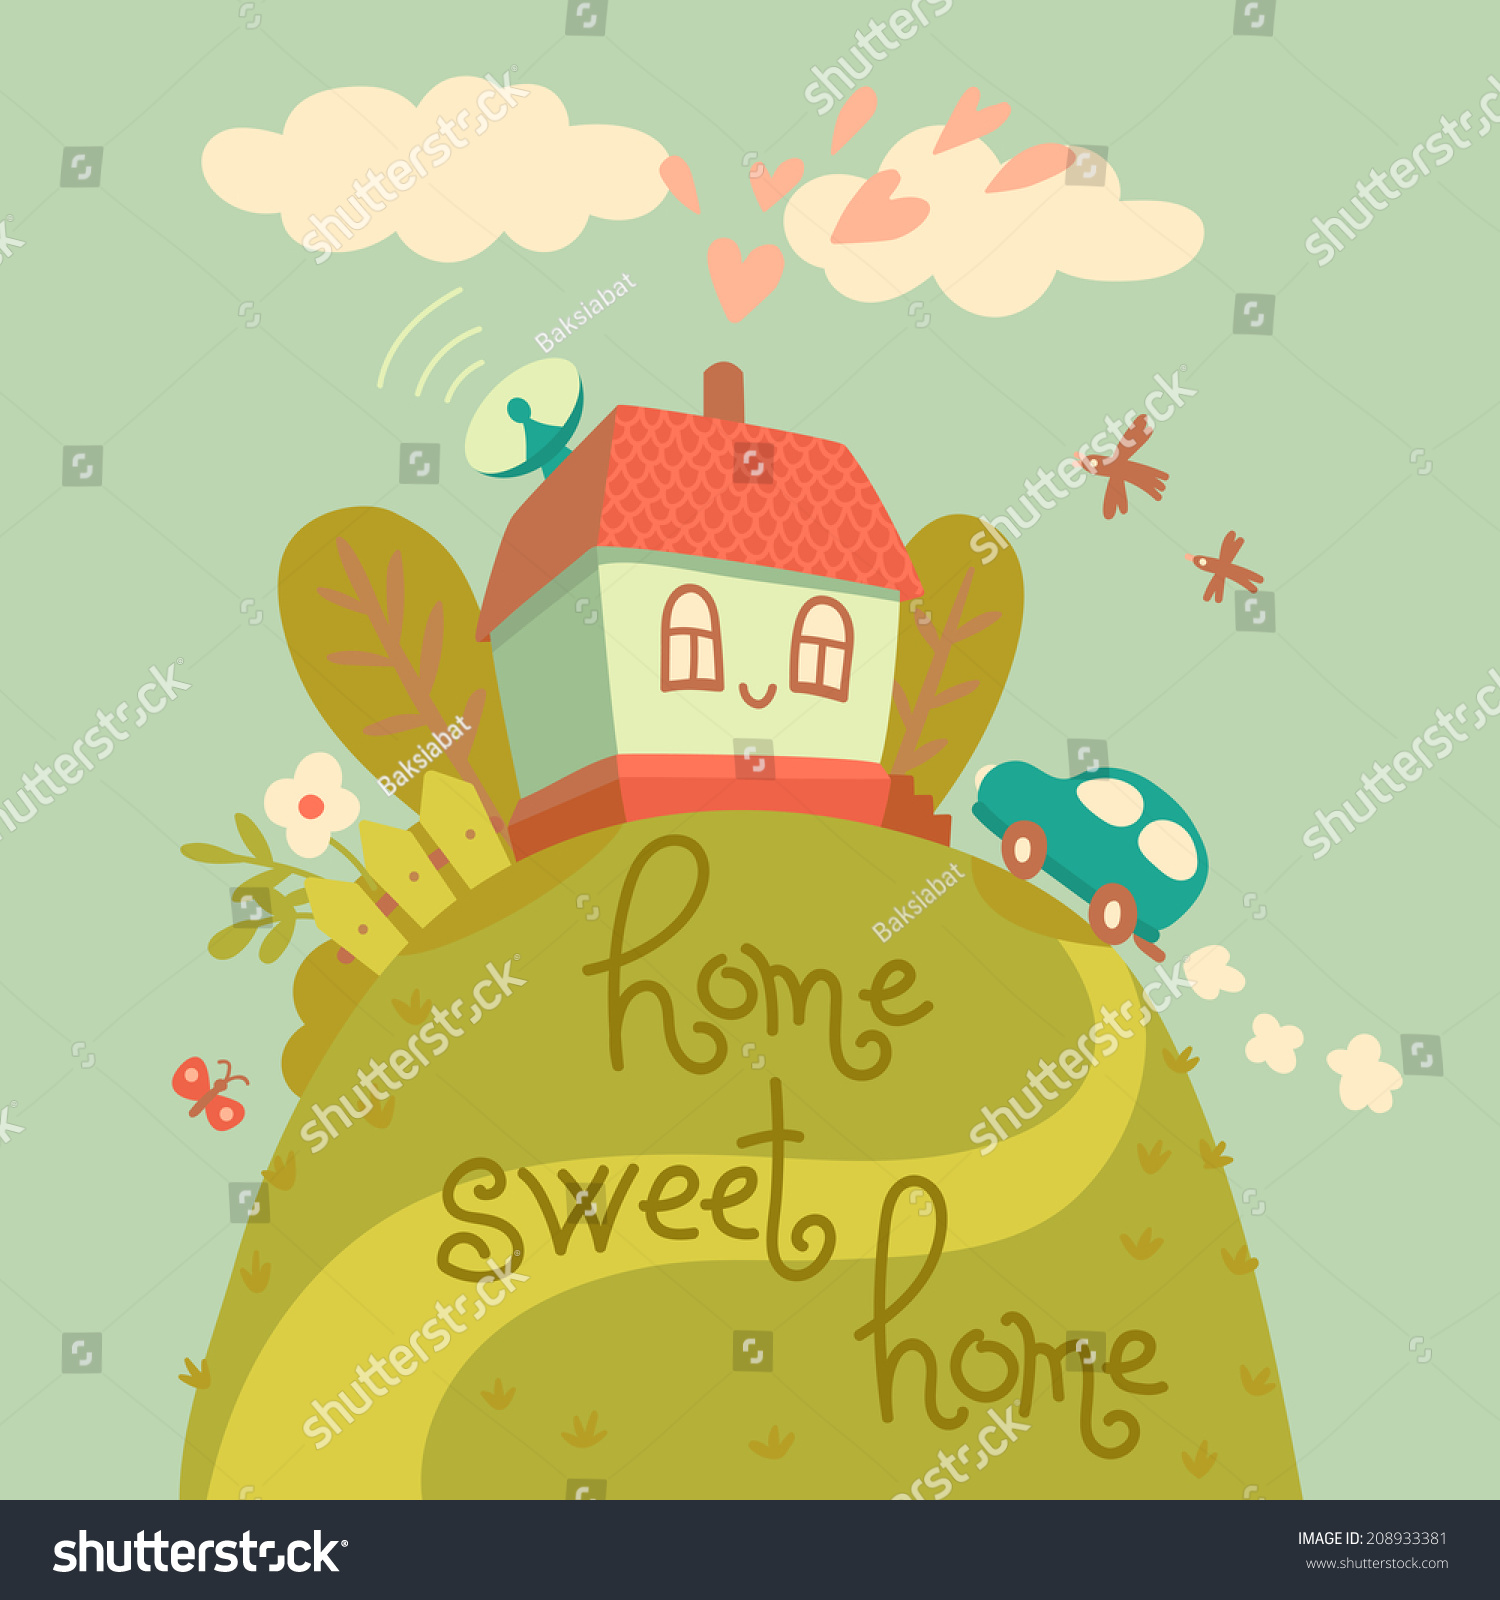 36,368 Happy new home cartoon Images, Stock Photos & Vectors | Shutterstock